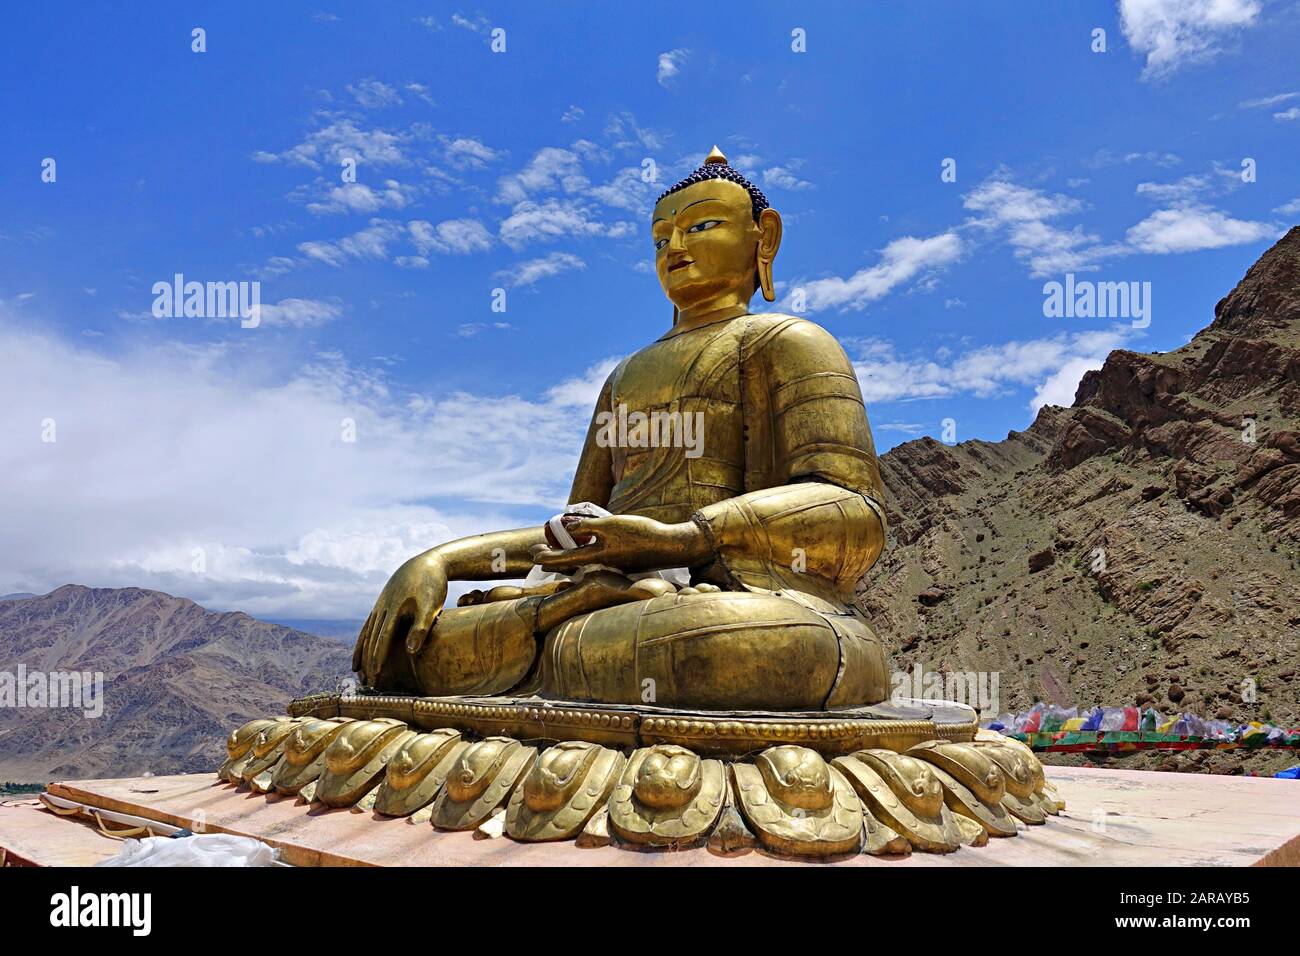 Statua del Buddha d'oro sul Monastero di Hemis, Hemis gompa, un monastero buddista himalayano (gompa) del lignaggio di Drukpa, a Hemis, Ladakh, India. Foto Stock